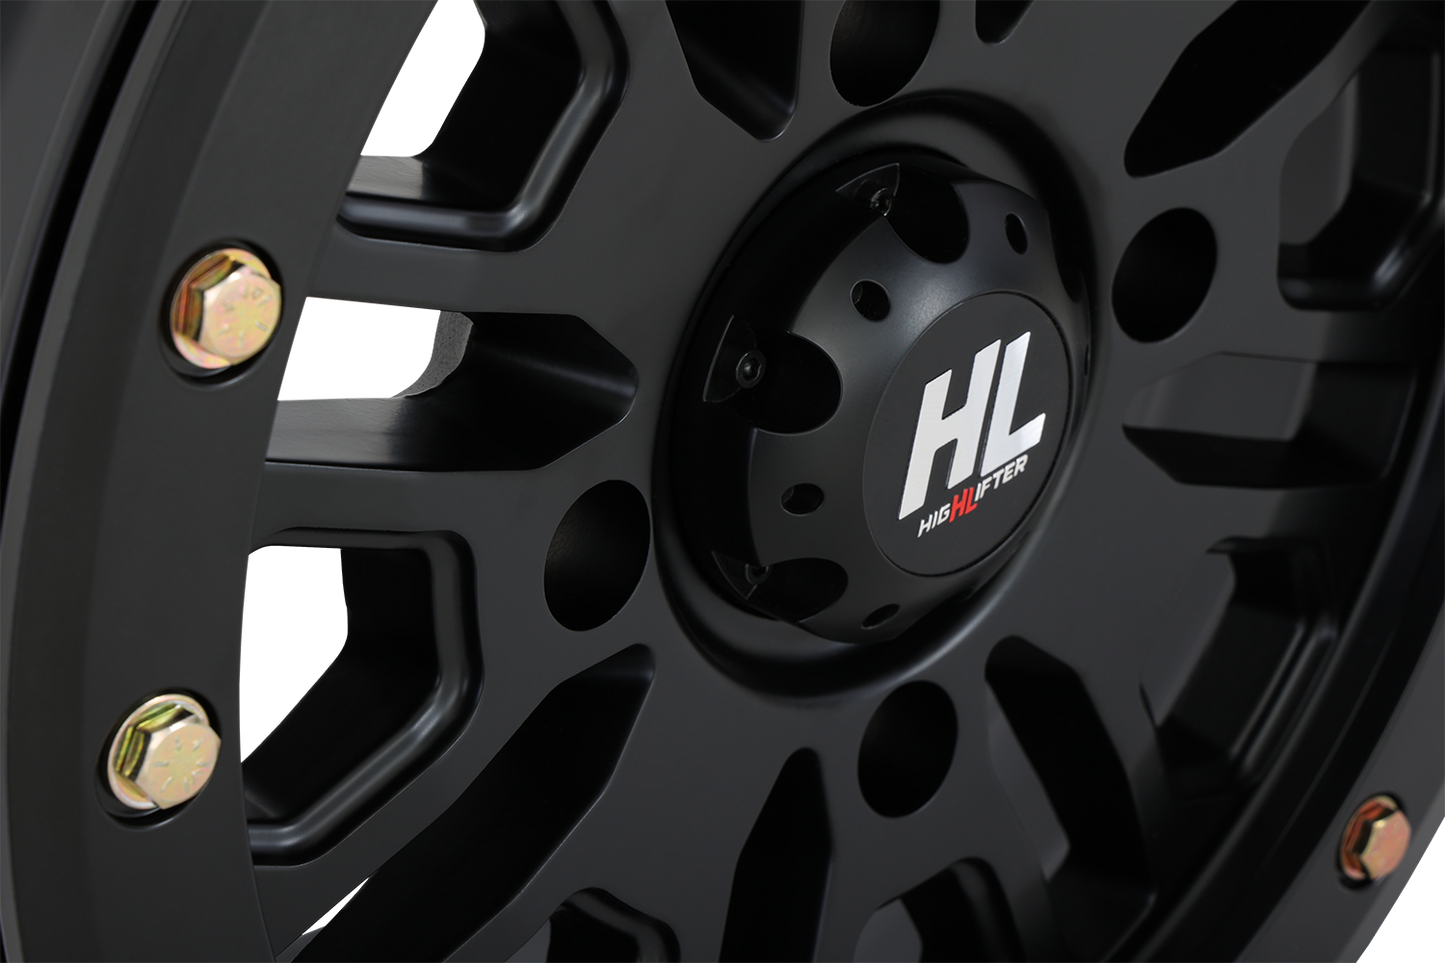 HIGH LIFTER Wheel - HL23 Beadlock - Front/Rear - Matte Black - 15x7 - 4/156 - 5+2 (+38 mm) 15HL23-1456